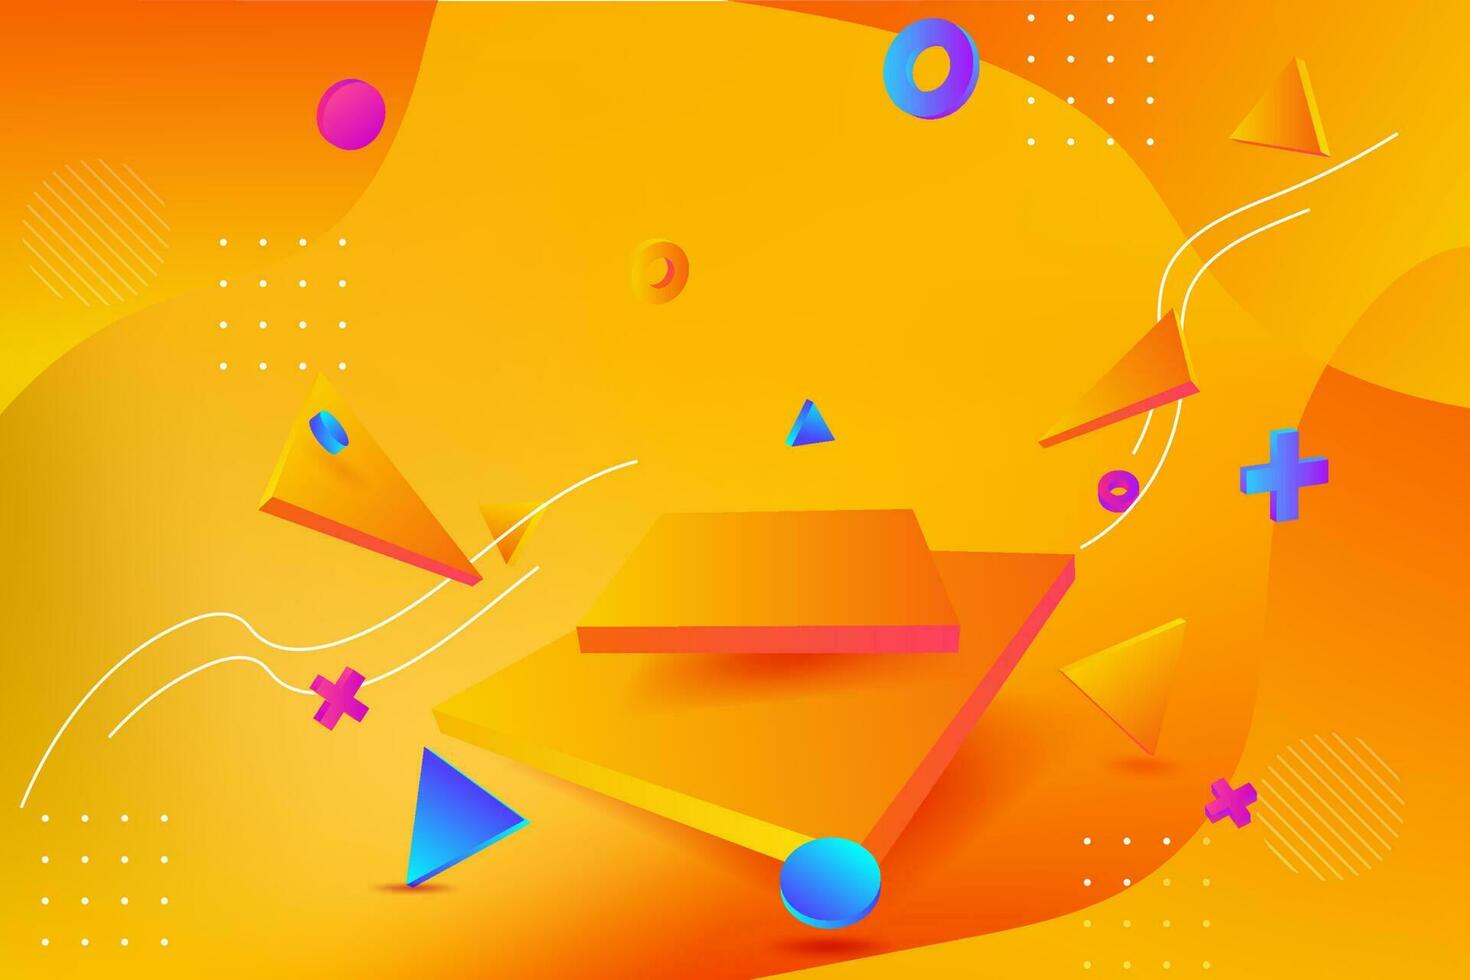 moderno 3d vetor ilustração do uma néon laranja círculo pedestal plataforma cena para tecnologia mostruário, vibrante fluorescente brincar modelo, amarelo brilho e geométrico formas